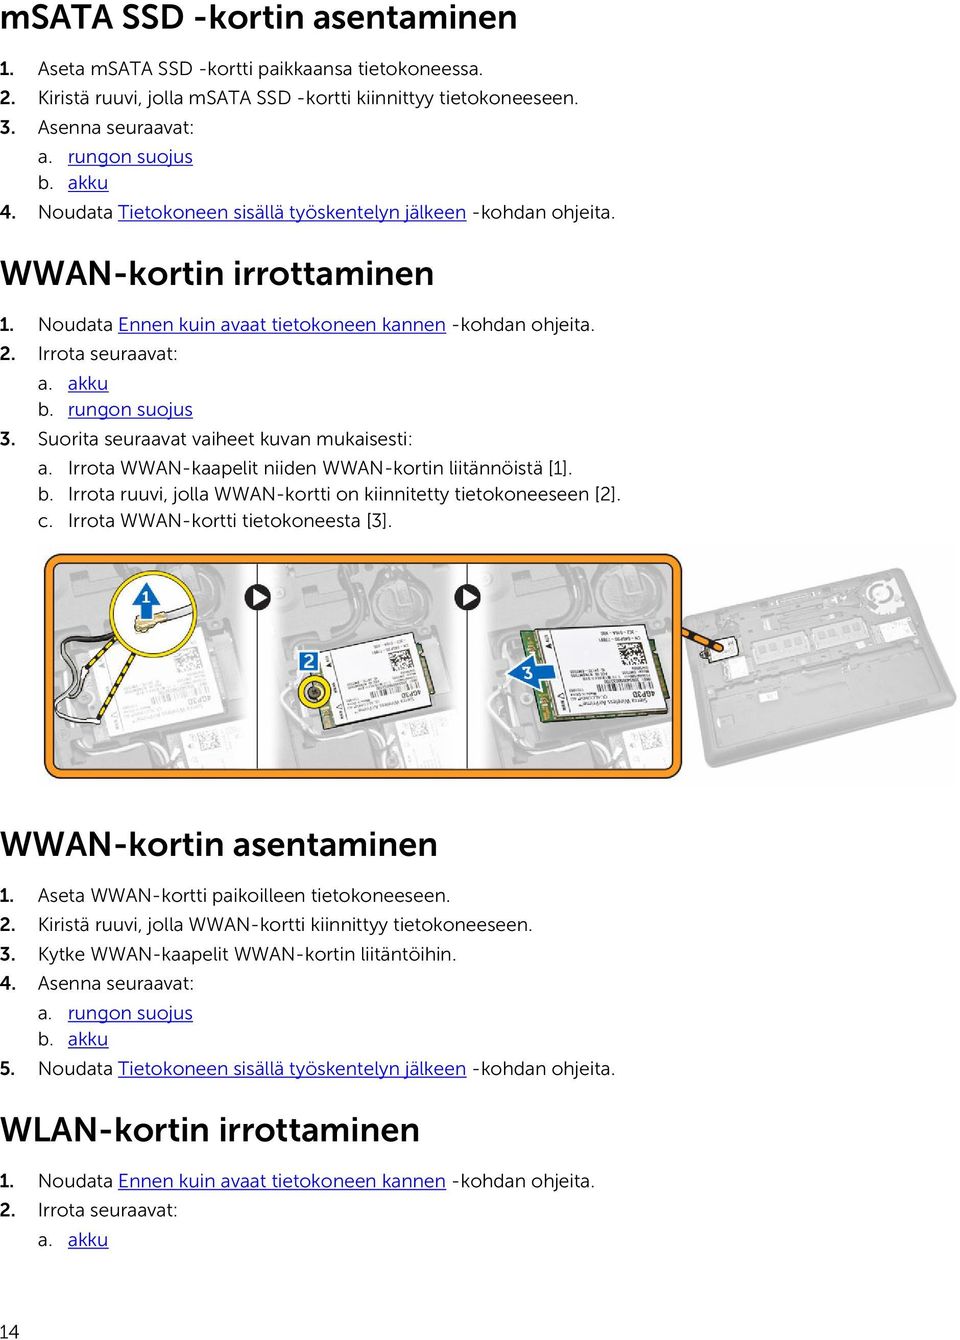 rungon suojus 3. Suorita seuraavat vaiheet kuvan mukaisesti: a. Irrota WWAN-kaapelit niiden WWAN-kortin liitännöistä [1]. b. Irrota ruuvi, jolla WWAN-kortti on kiinnitetty tietokoneeseen [2]. c.